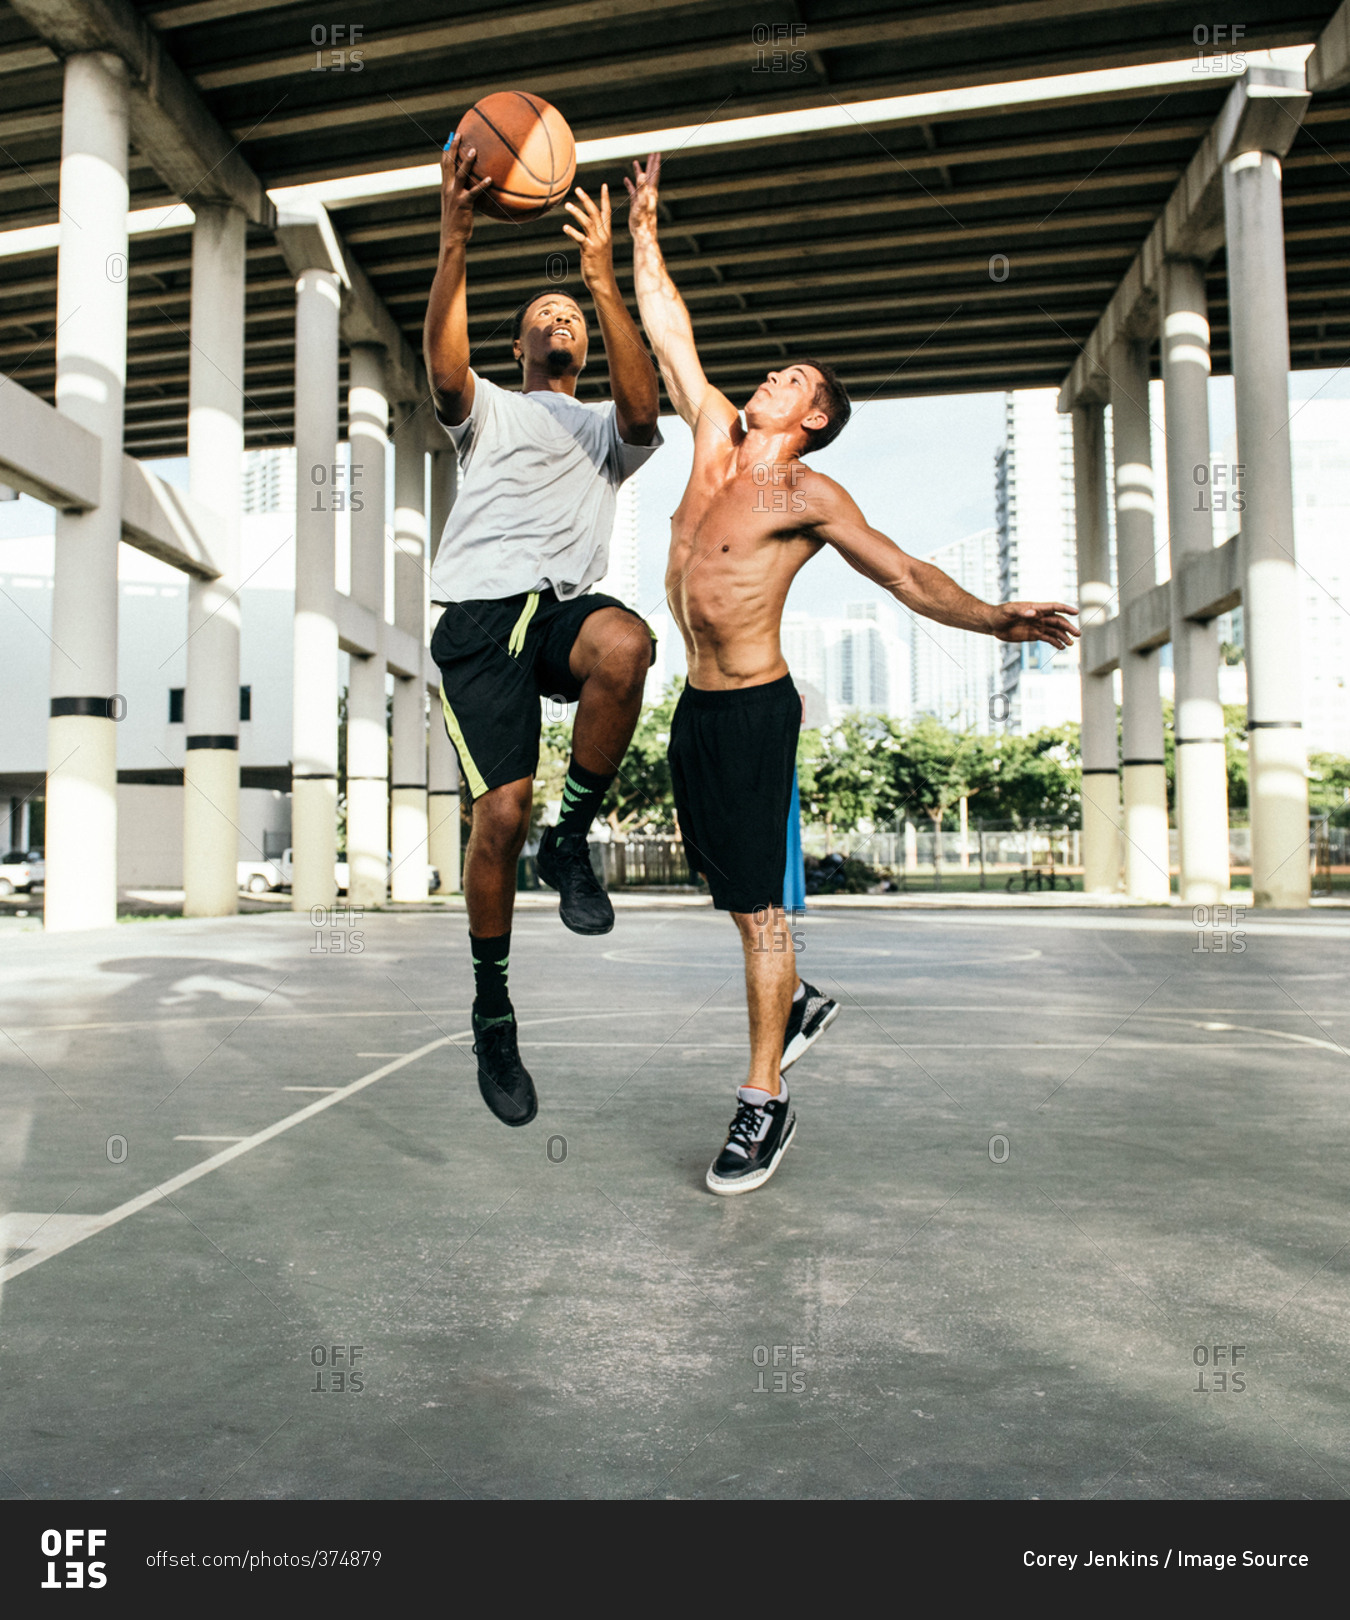 Men on basketball court jumping for basketball